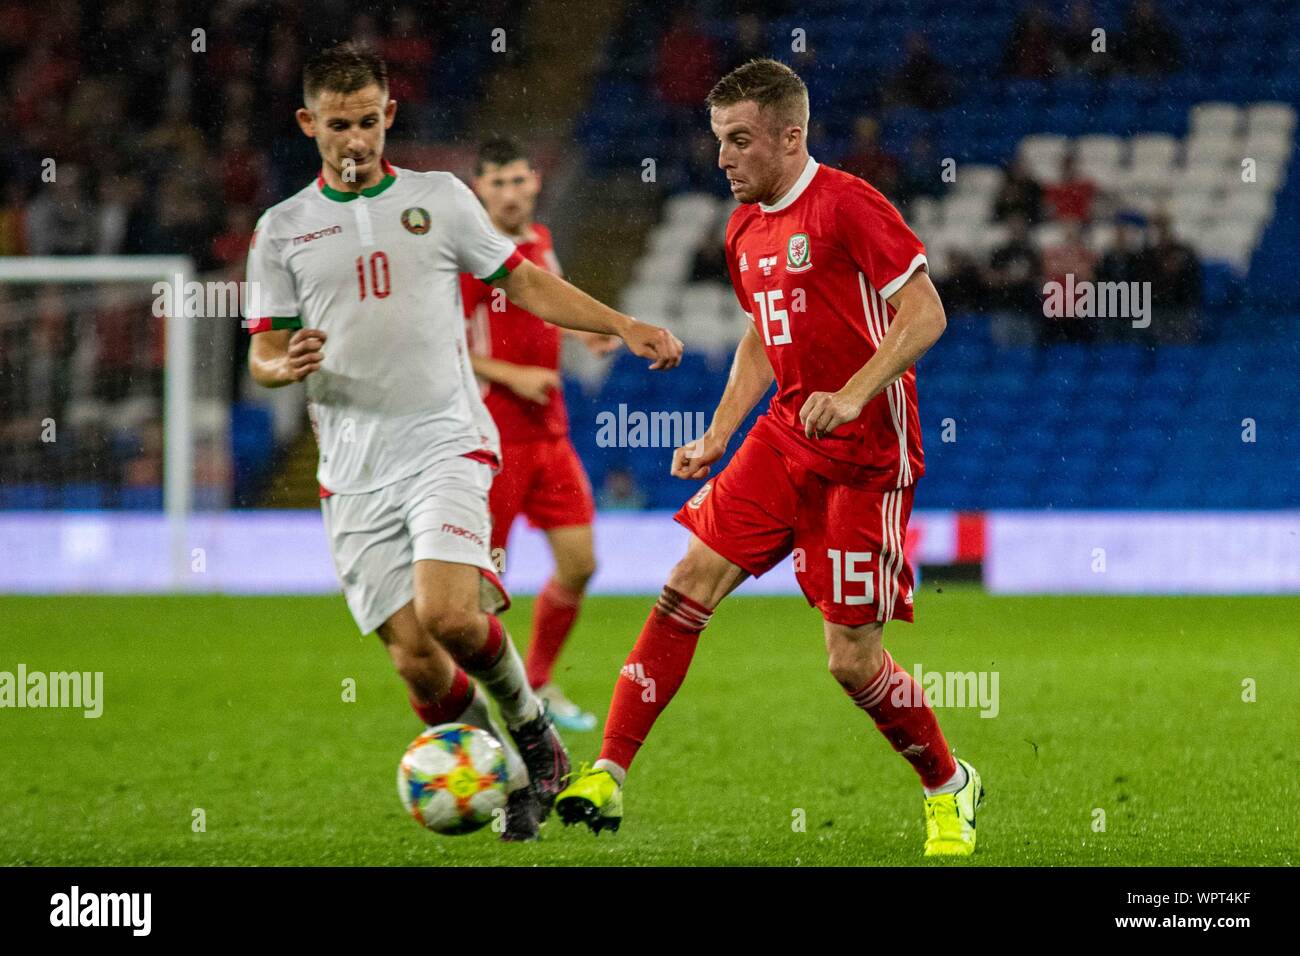 Vs belarus wales Wales vs